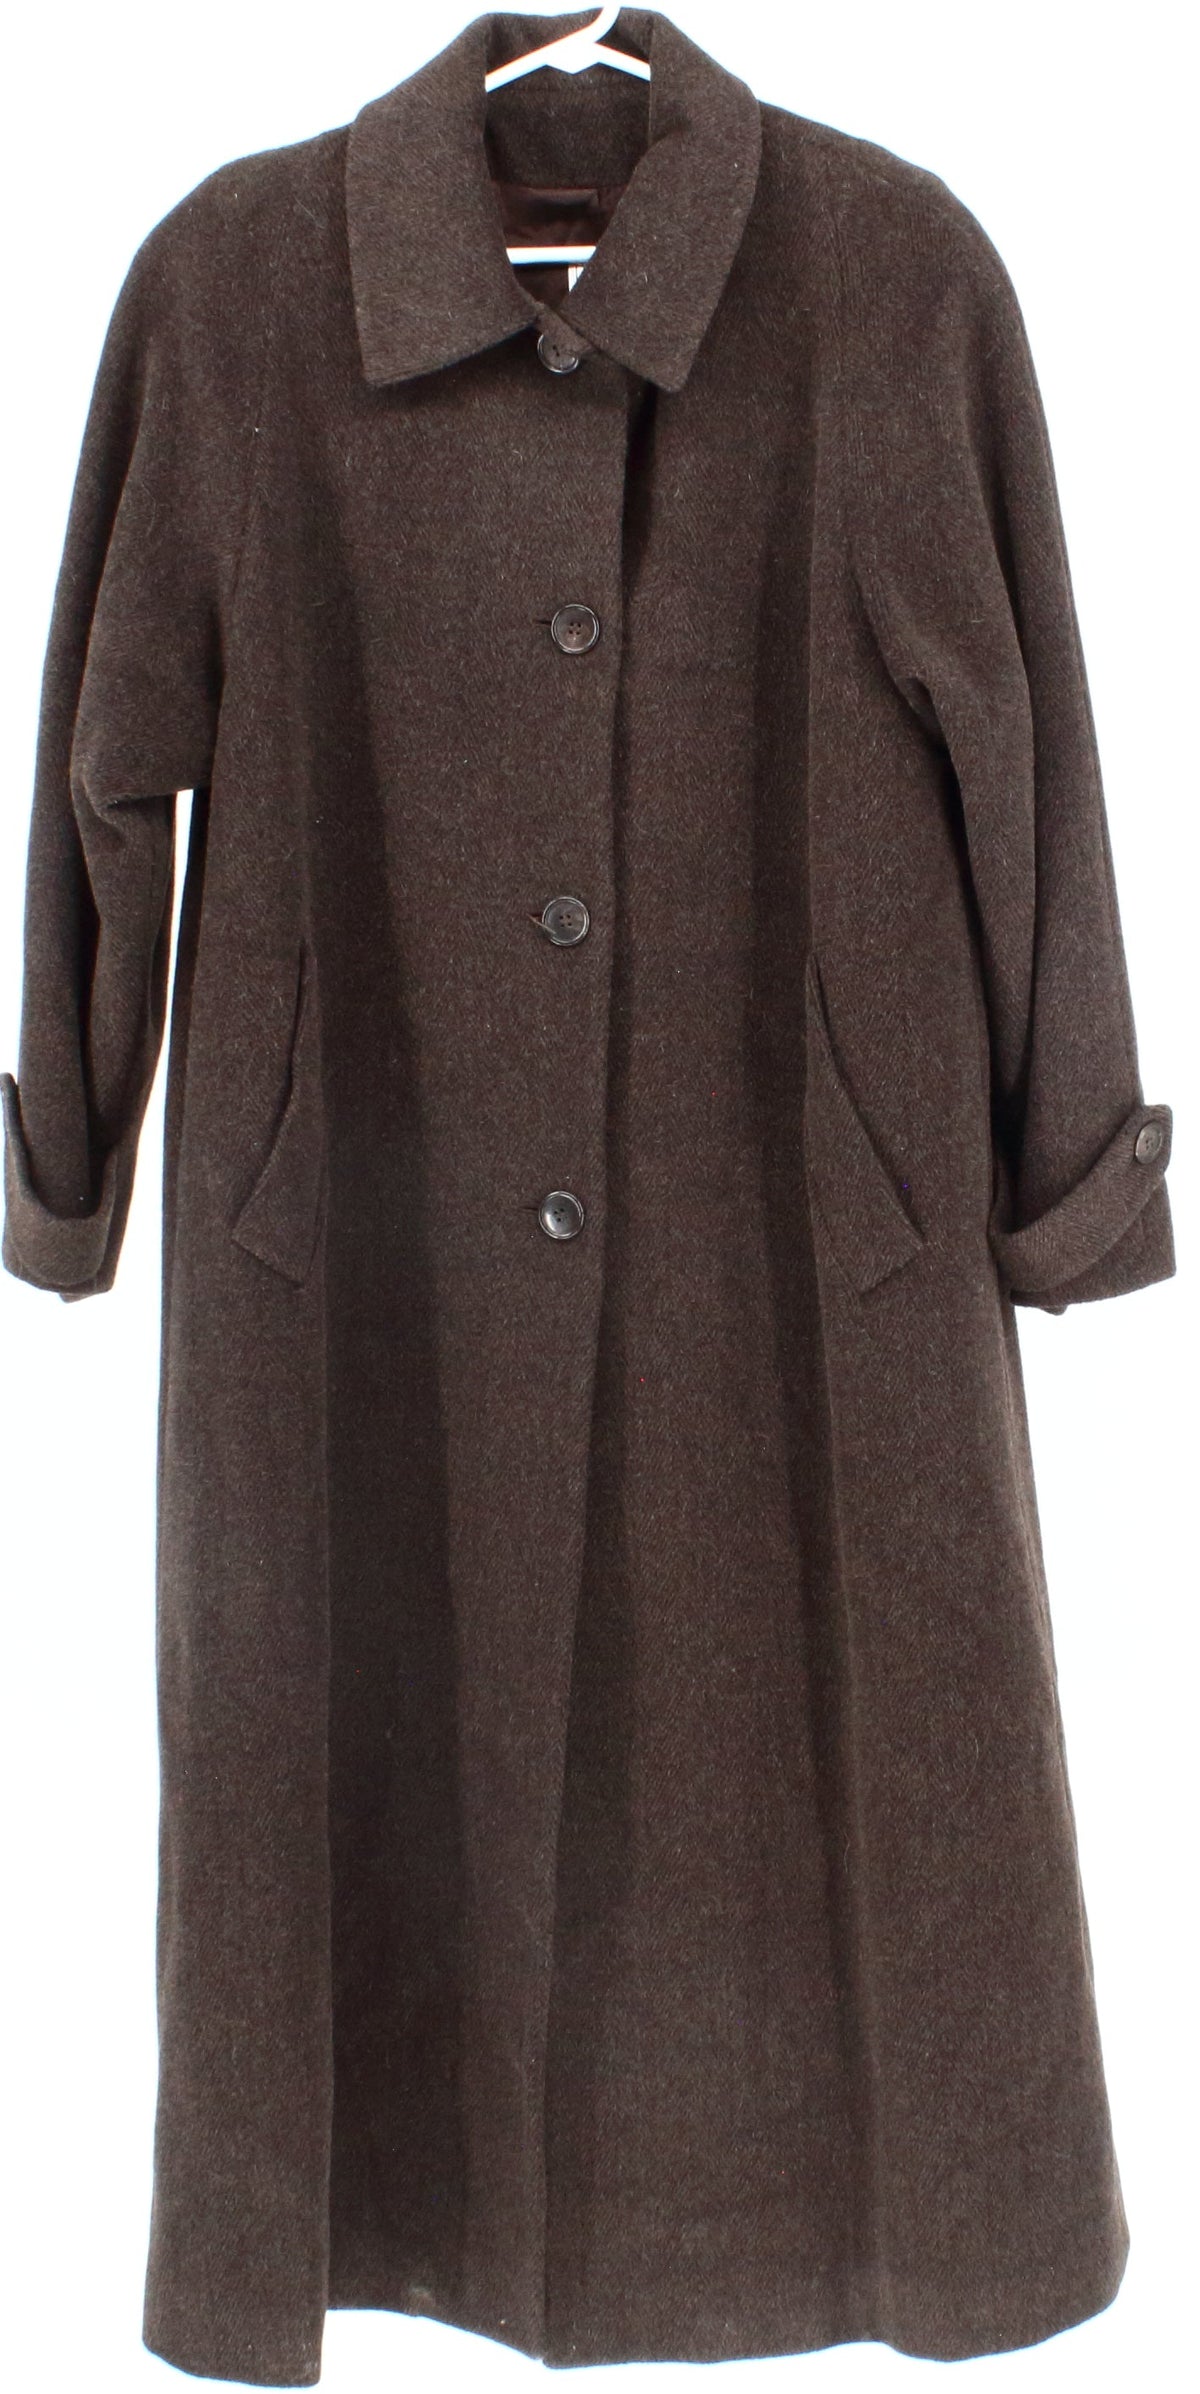 Jones New York Brown Women's Long Wool Coat